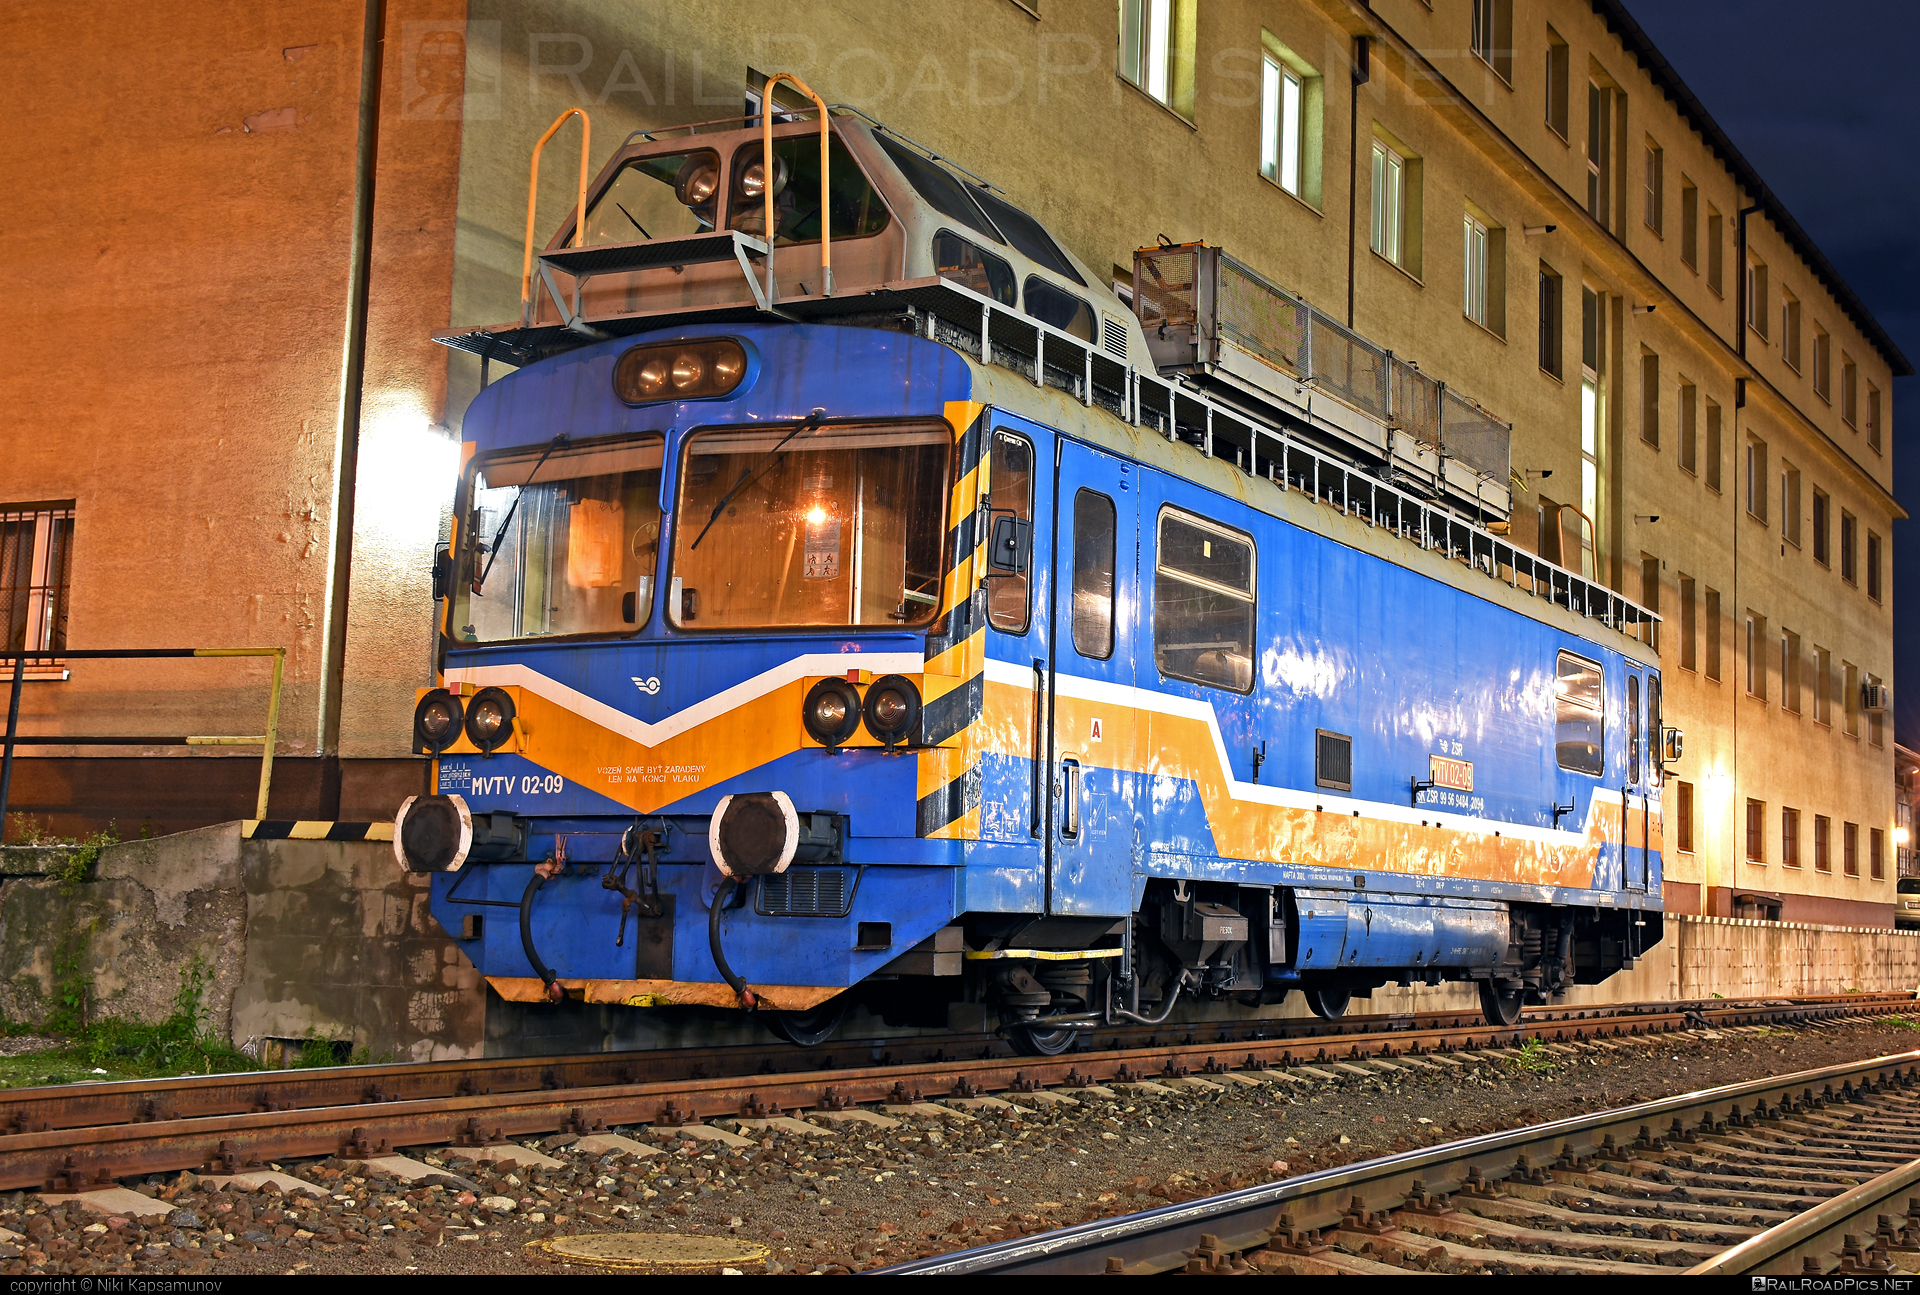 Vagónka Studénka MVTV 02 - MVTV 02-09 operated by Železnice Slovenskej Republiky #locomotivemvtv #mvtv02 #mvtv2 #vagonkastudenka #zelezniceslovenskejrepubliky #zsr